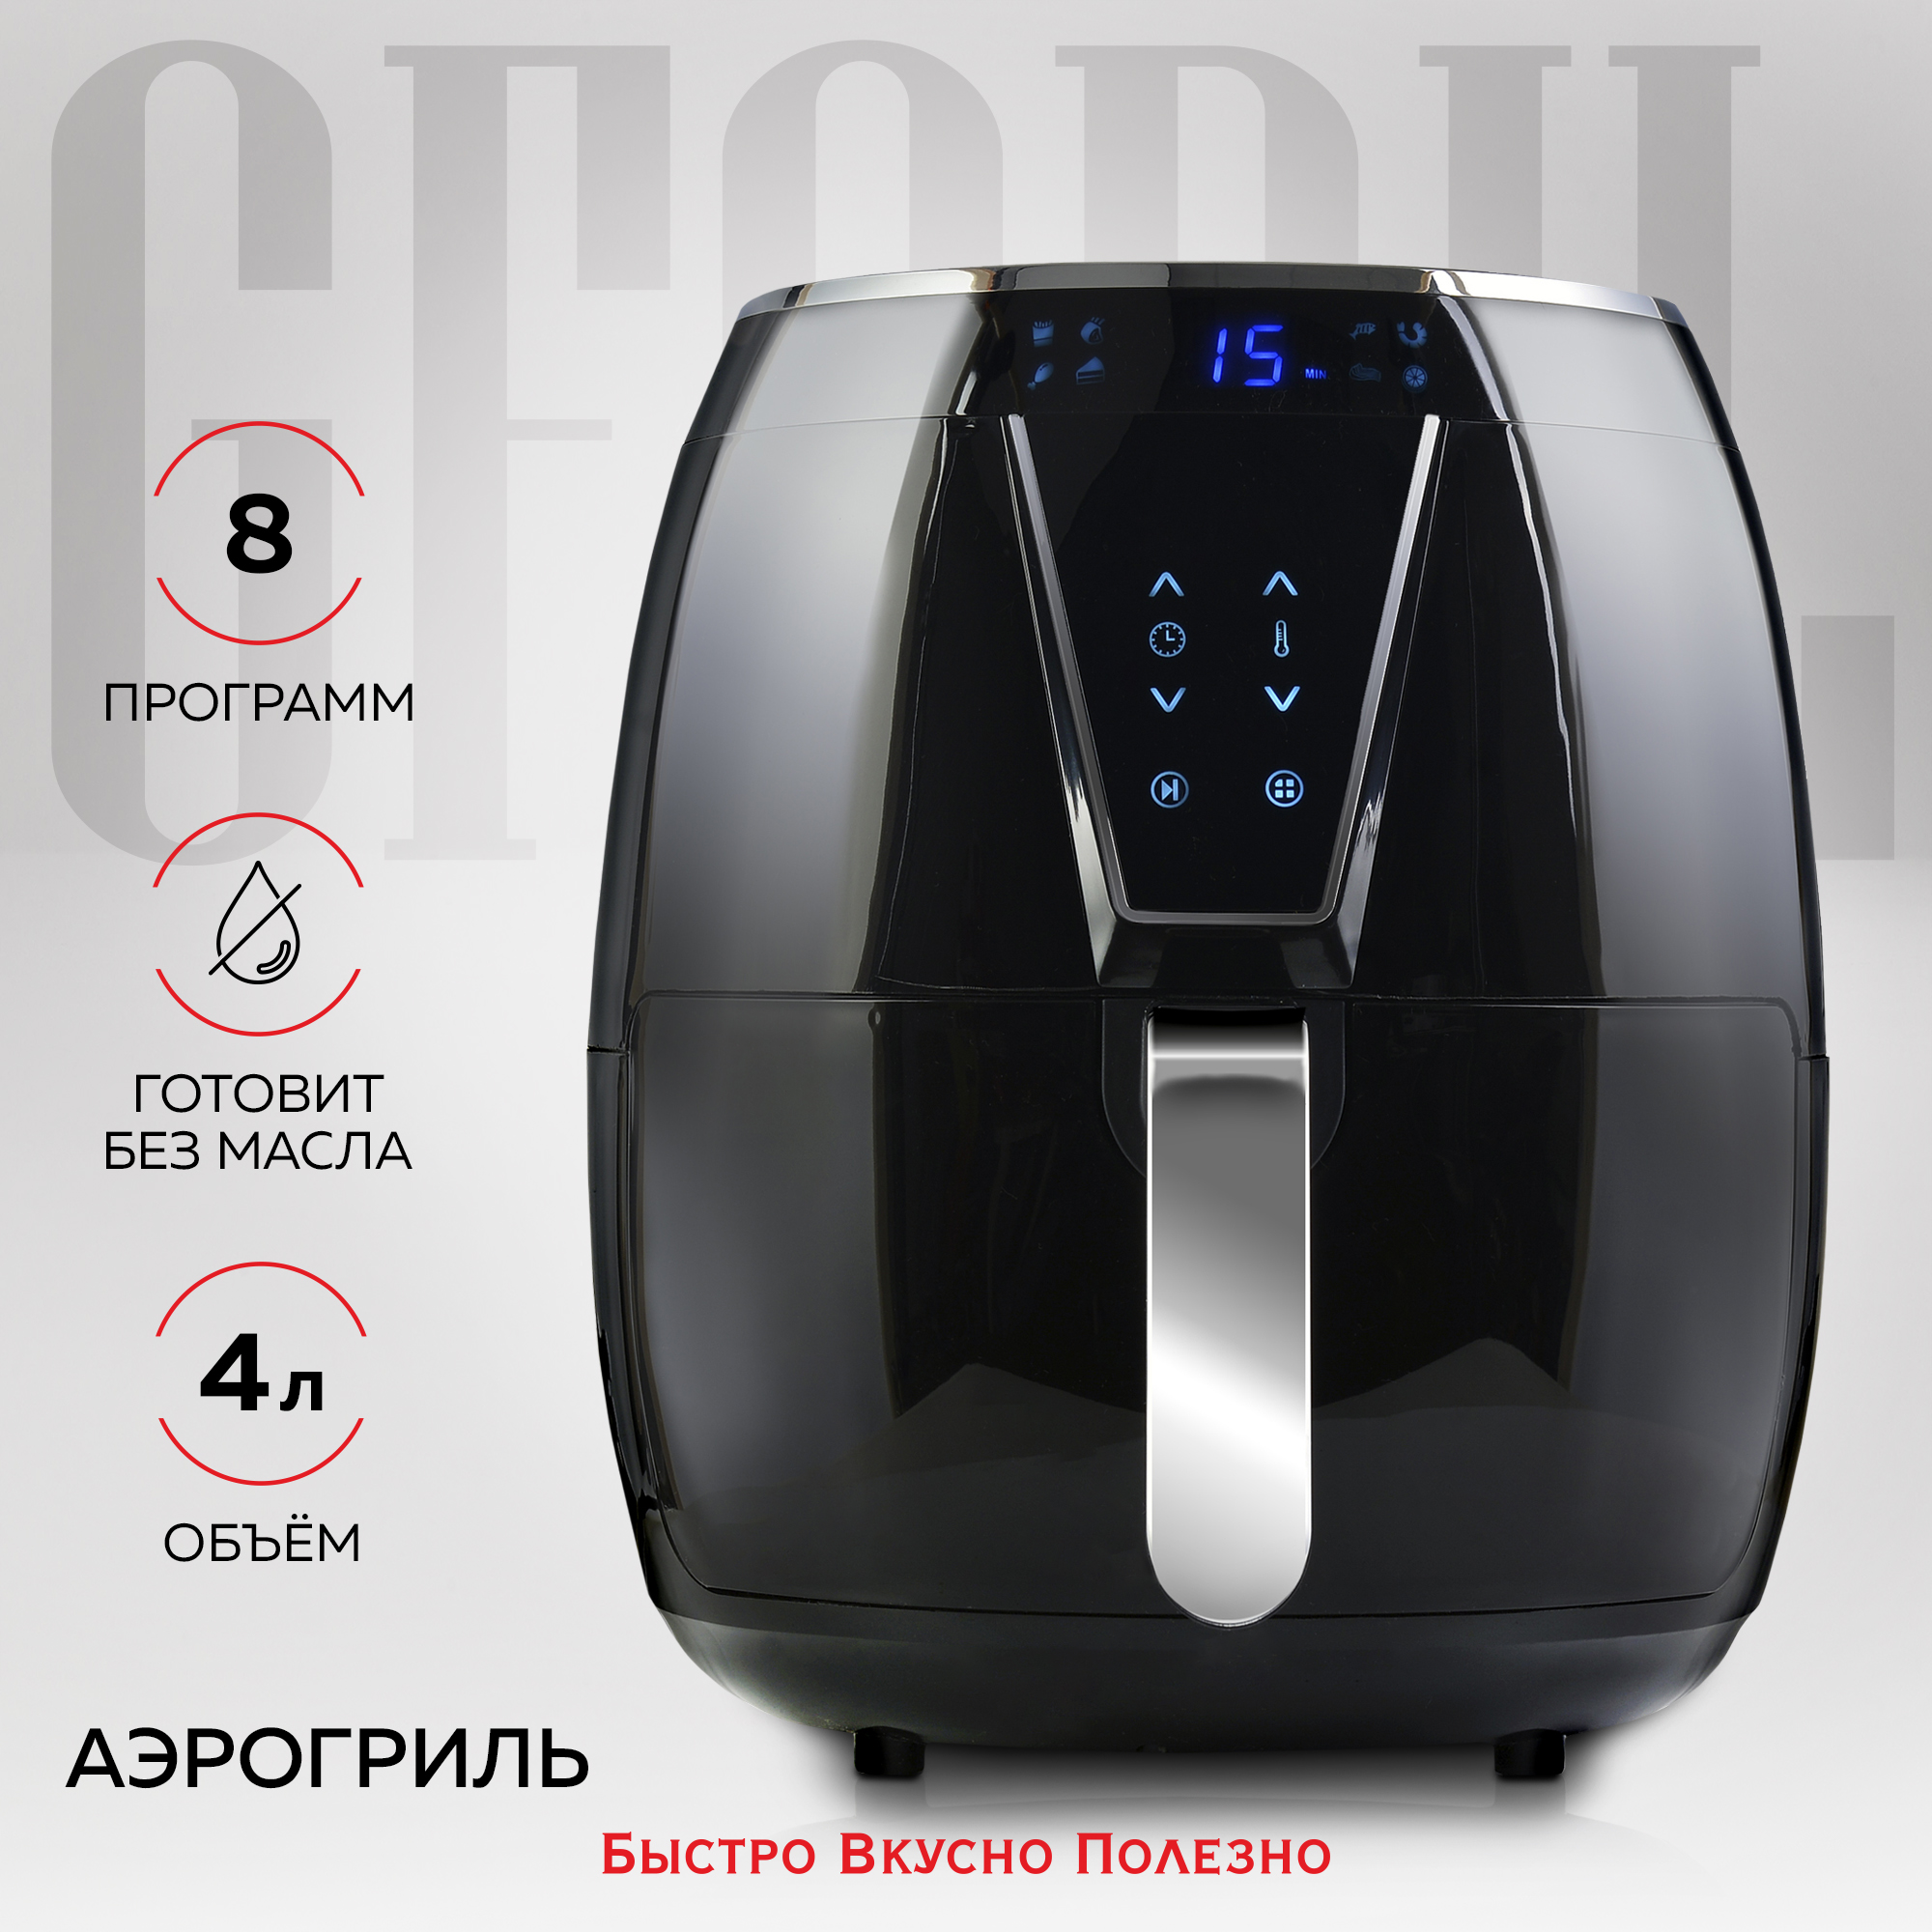 Аэрогриль GFGRIL GFA-4000 Air Fryer Black, купить в Москве, цены в интернет-магазинах на Мегамаркет